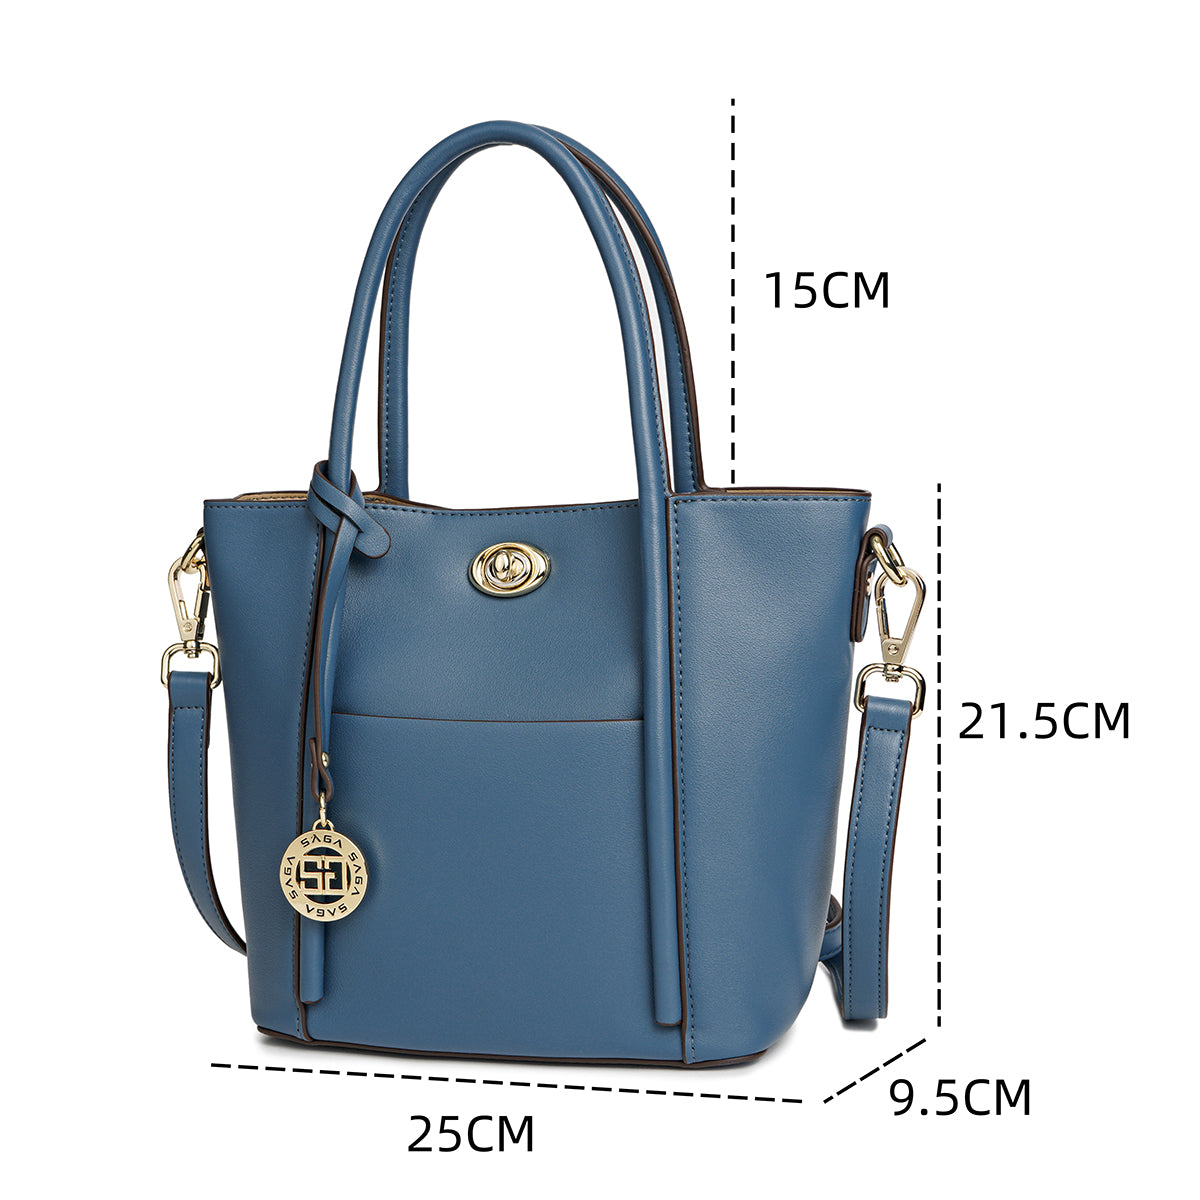 Handbag with shoulder strap, distinctive design, width 25 cm, maroon or blue